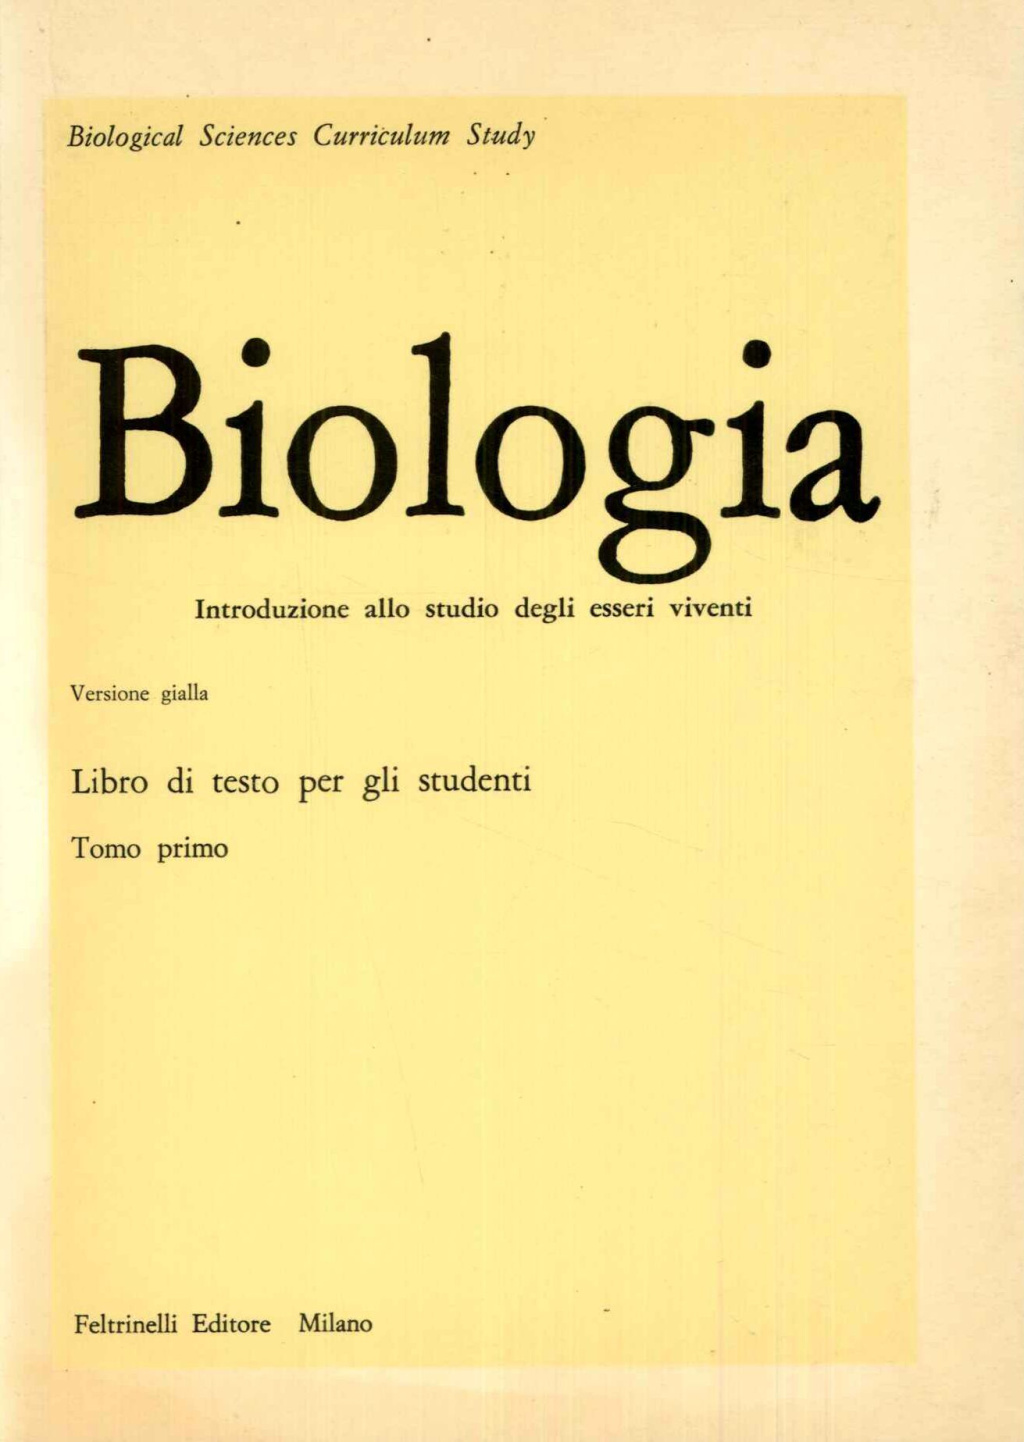 Biologia. Introduzione allo studio degli esseri viventi. Libro di testo per gli studenti. Tomo primo